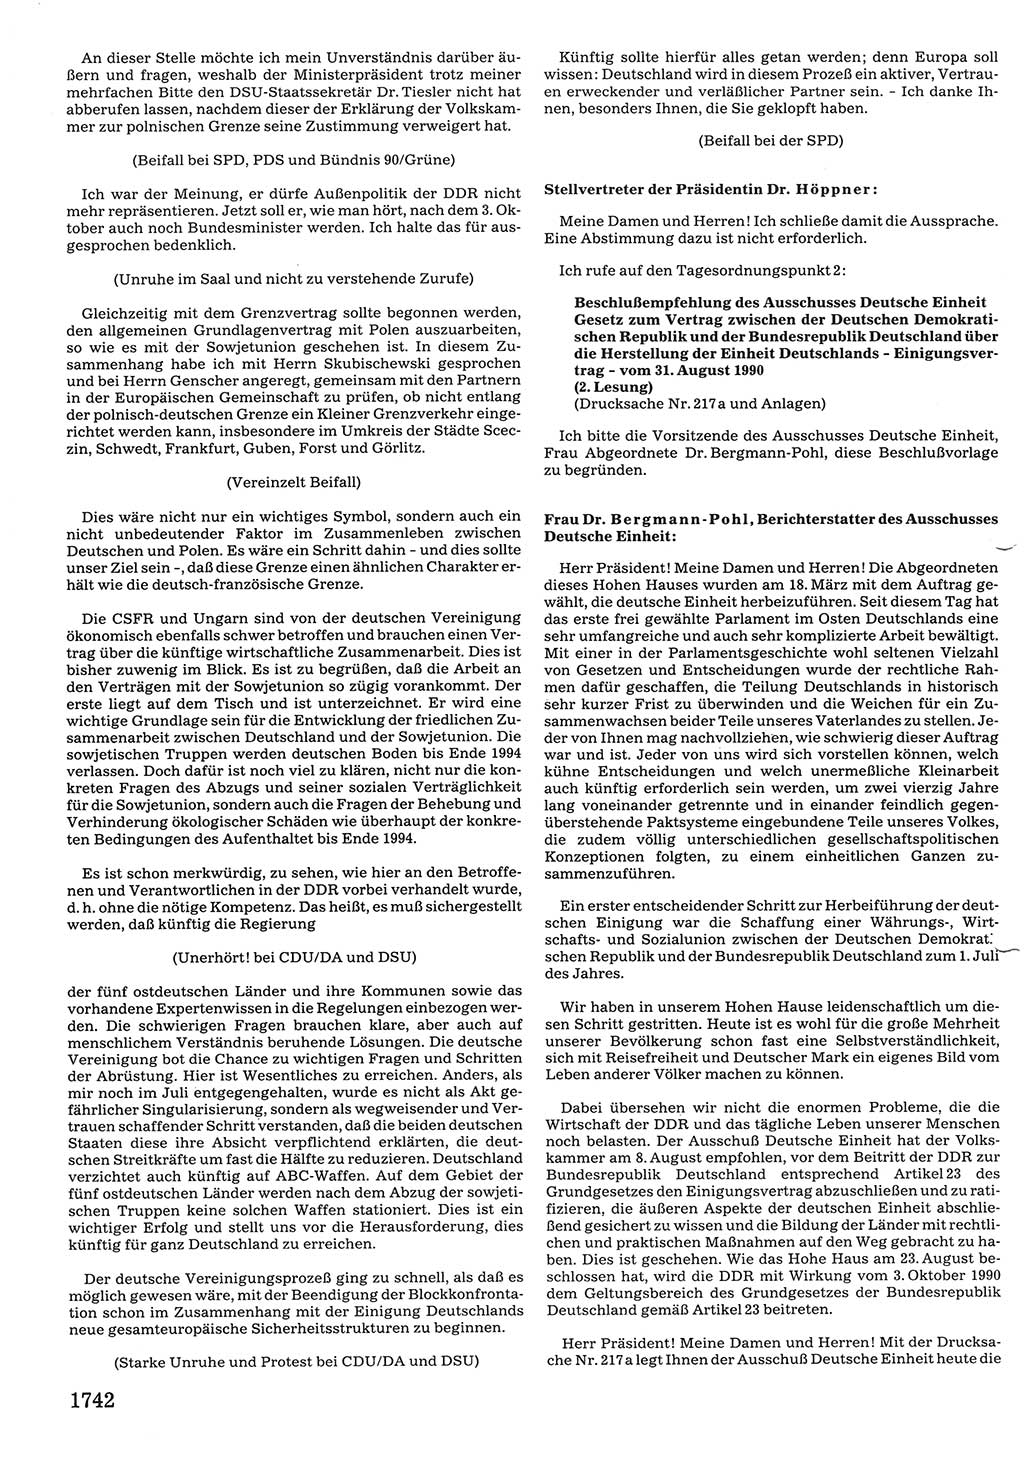 Tagungen der Volkskammer (VK) der Deutschen Demokratischen Republik (DDR), 10. Wahlperiode 1990, Seite 1742 (VK. DDR 10. WP. 1990, Prot. Tg. 1-38, 5.4.-2.10.1990, S. 1742)